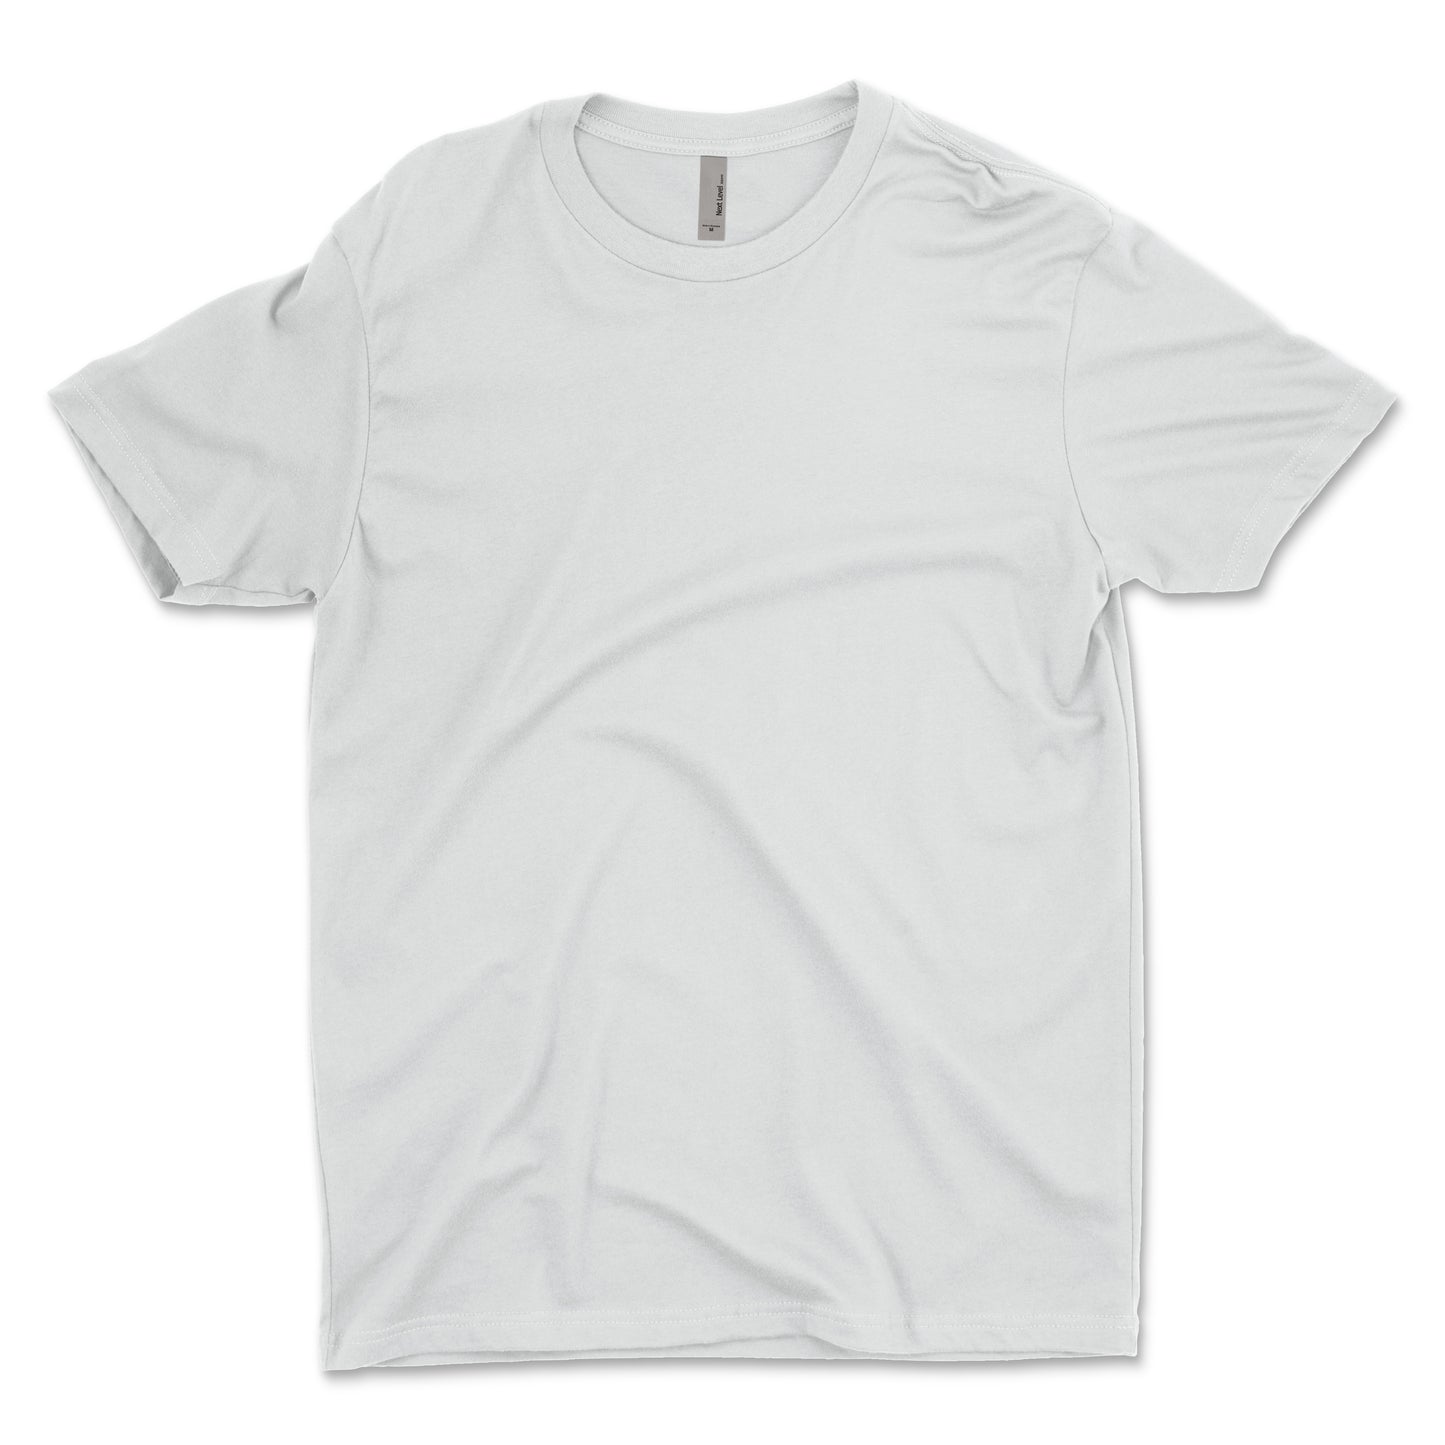 Next Level Unisex Cotton T-Shirt - 3600